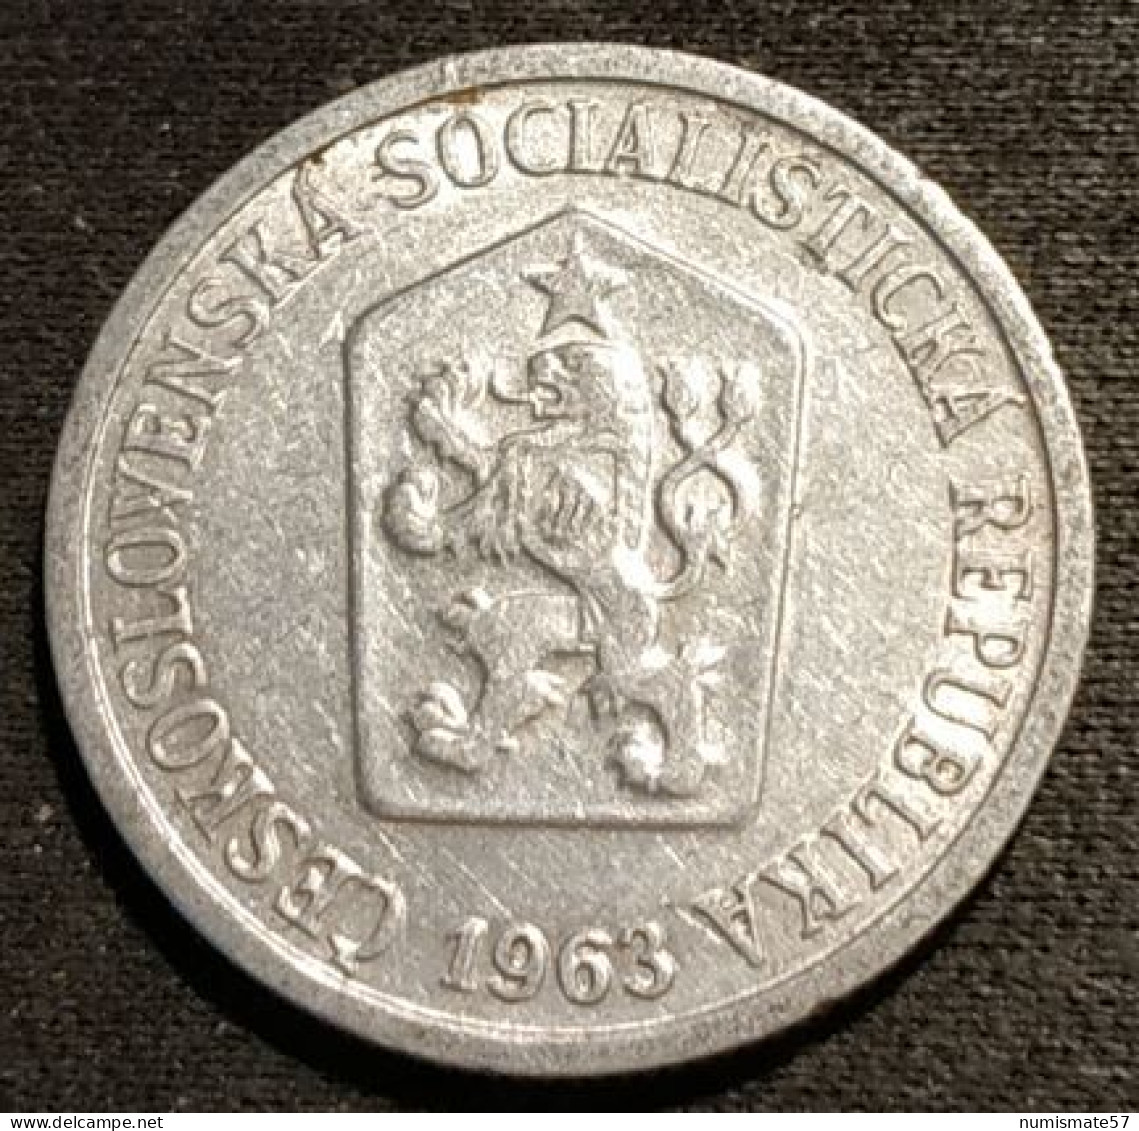 TCHECOSLOVAQUIE - Czechoslovakia - 10 HALERU 1963 - KM 49.1 - Czechoslovakia